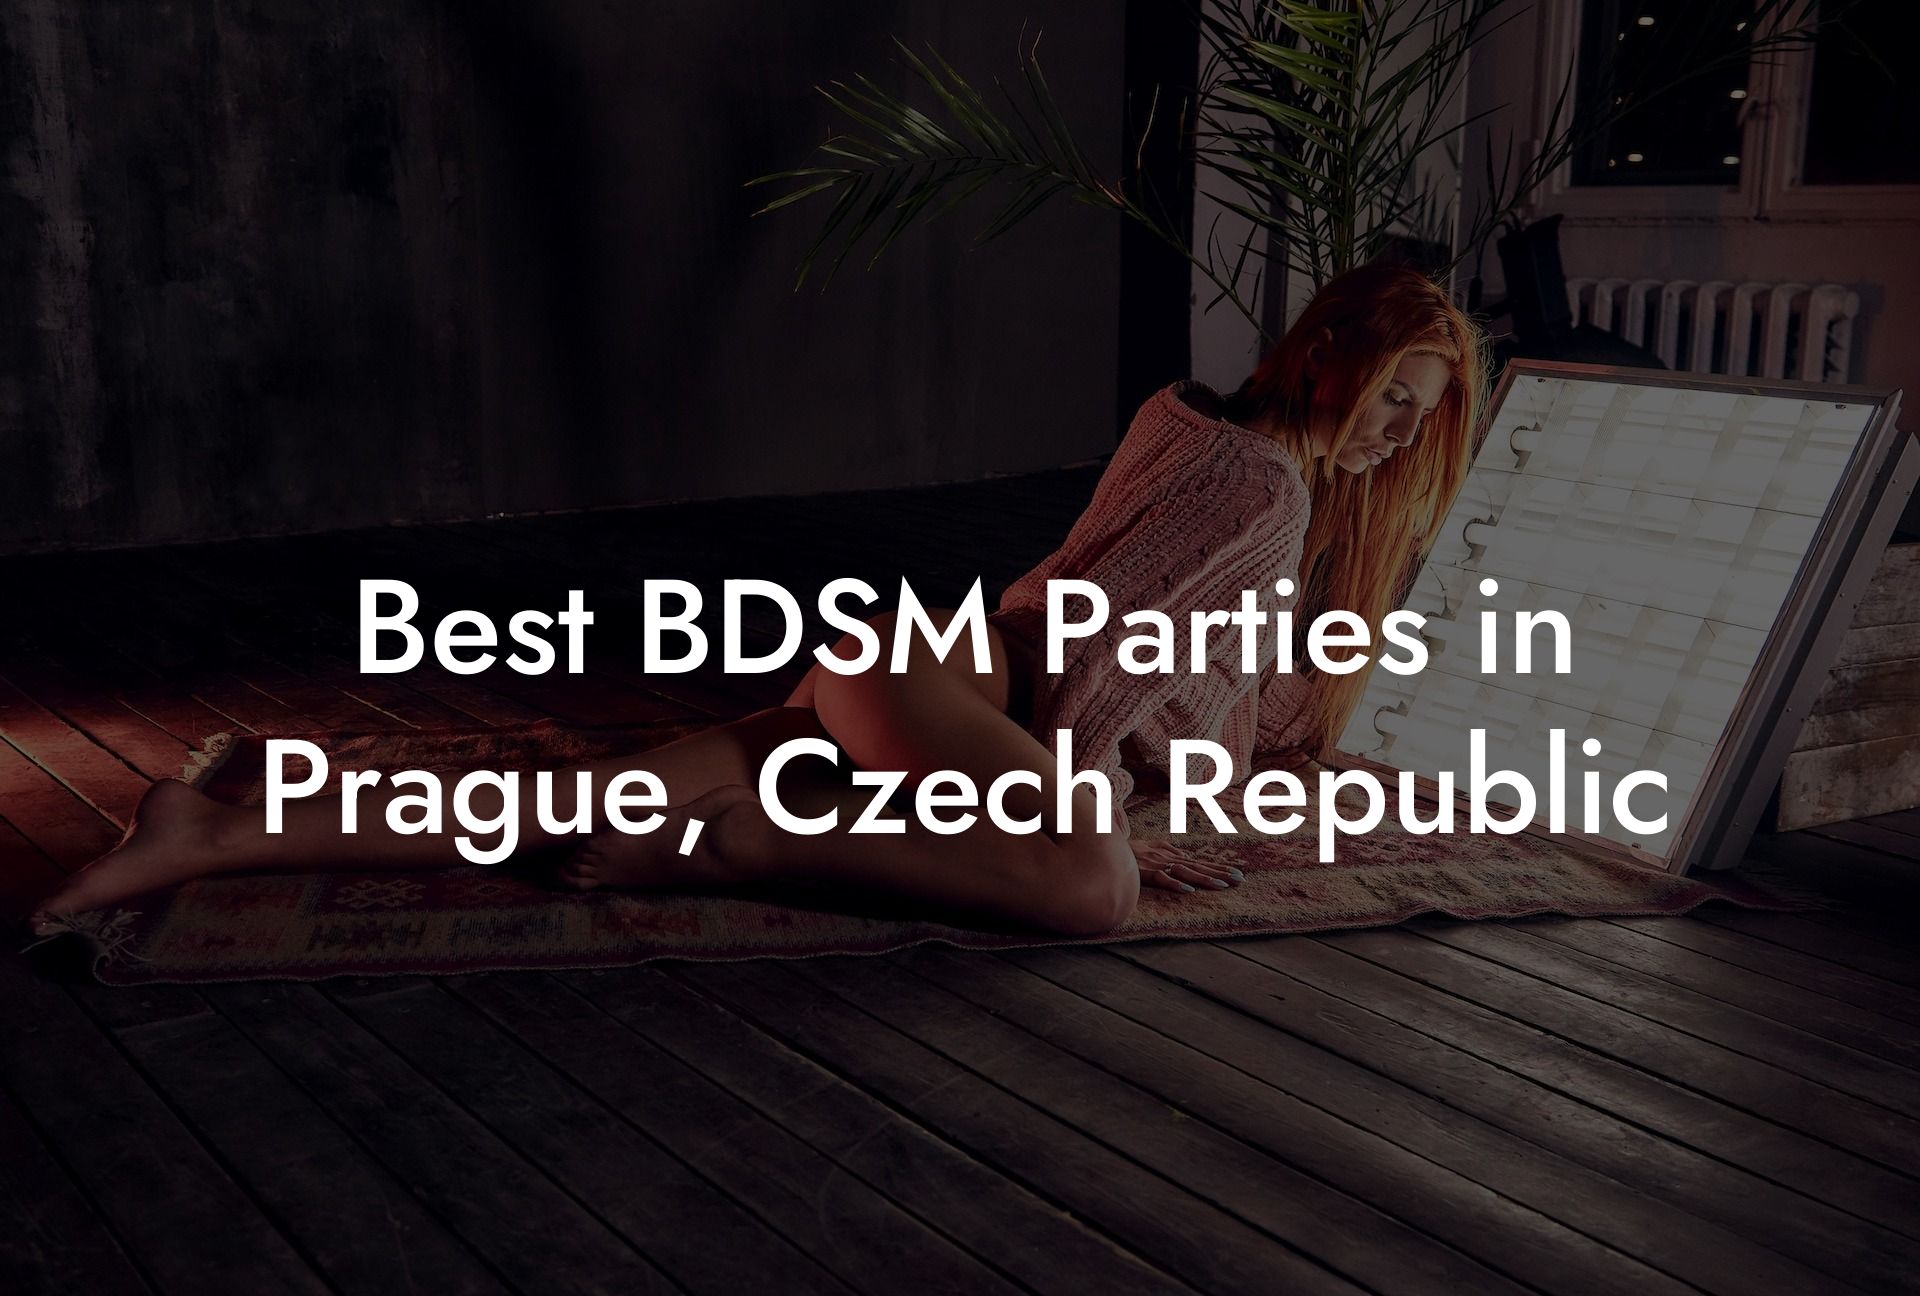 Best BDSM Parties in Prague, Czech Republic